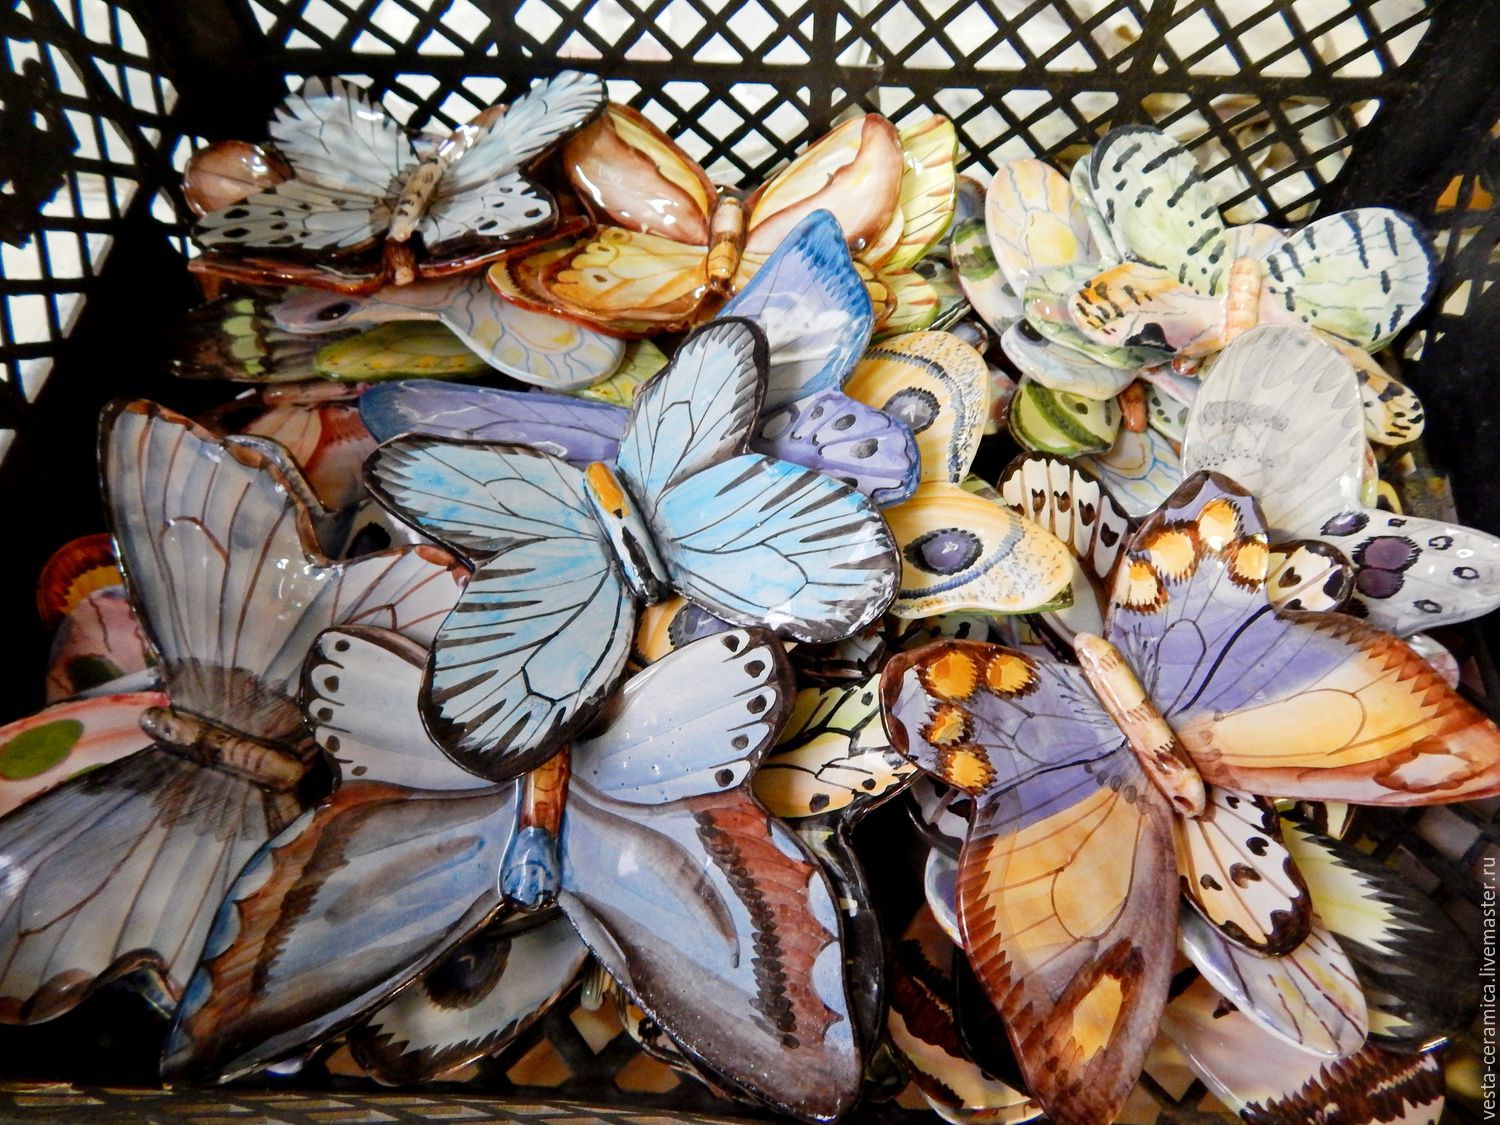 Зеркальные бабочки в интерьере